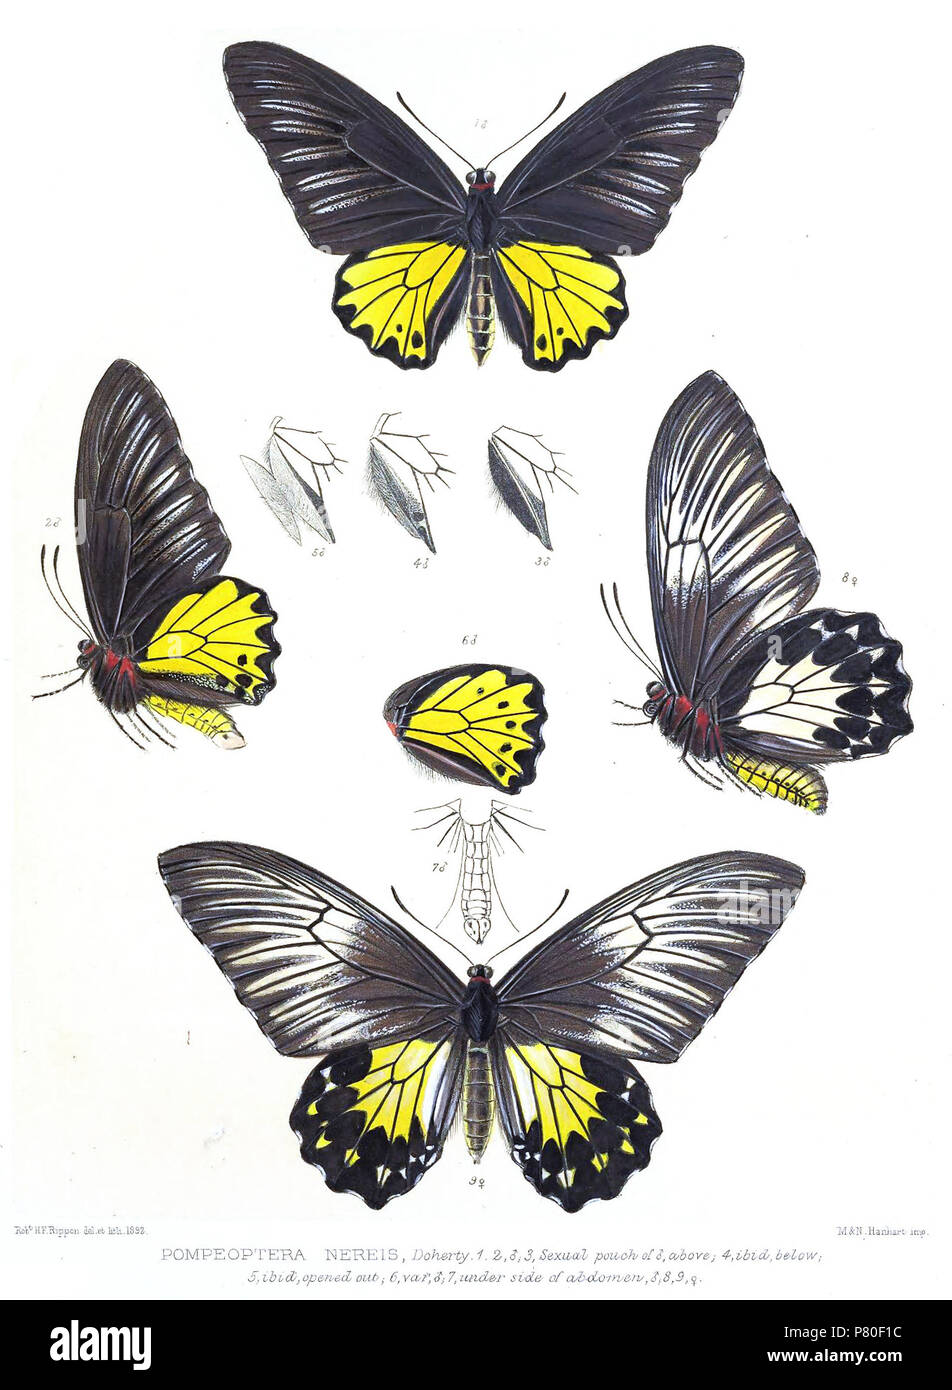 Pompeoptera nereis . 1899 317 PompeopteraNereisRippon Stock Photo